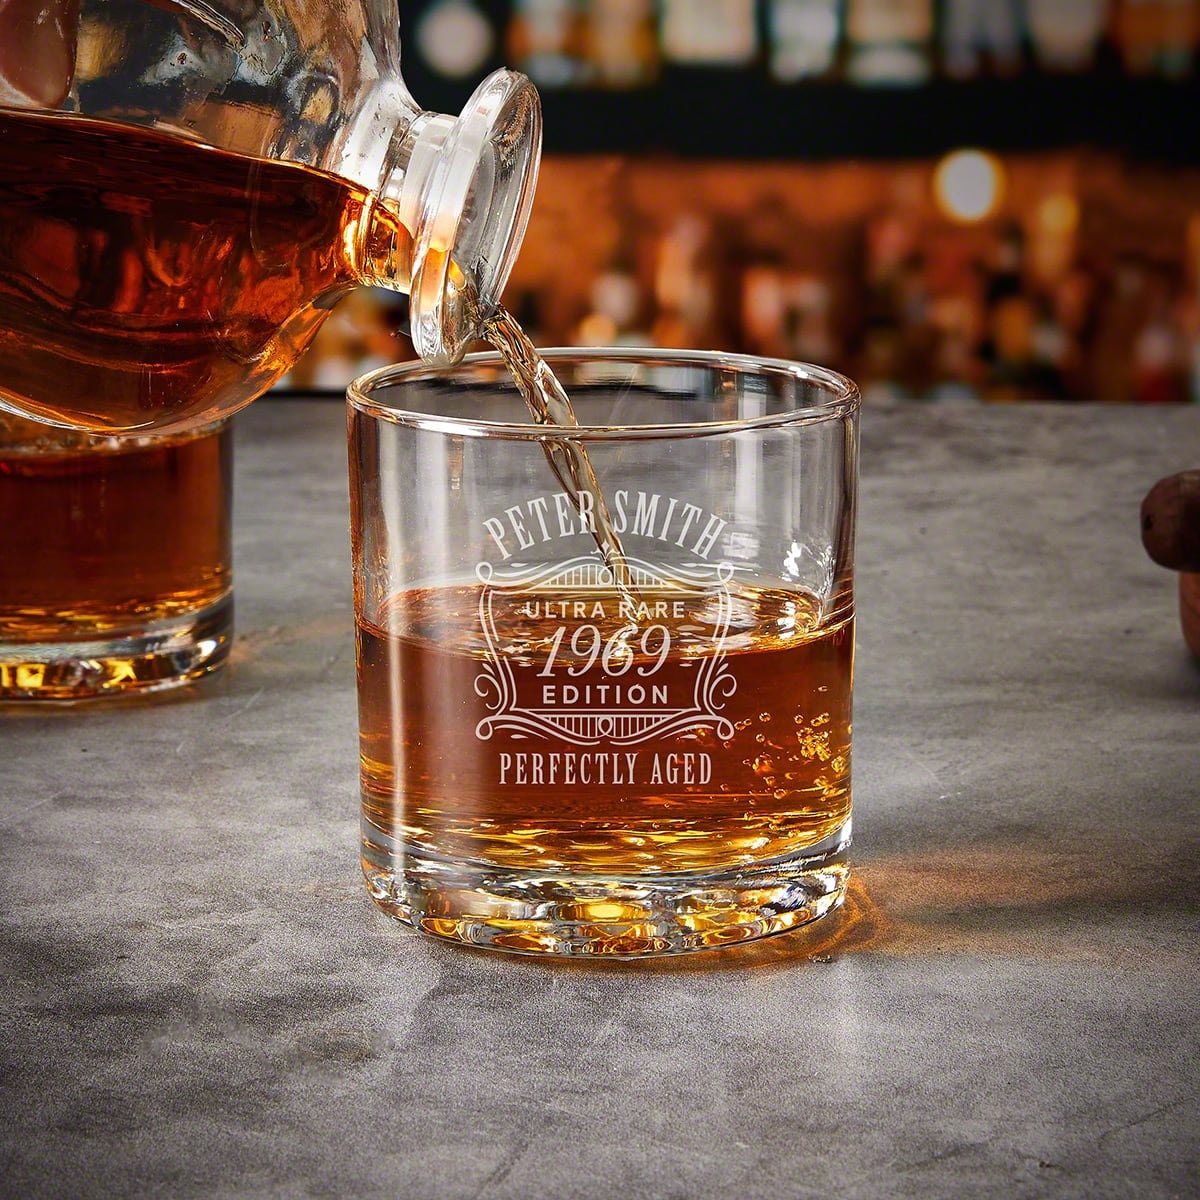 Custom Engraved Rocks Whiskey Tumbler by BruMate • Cheers MT